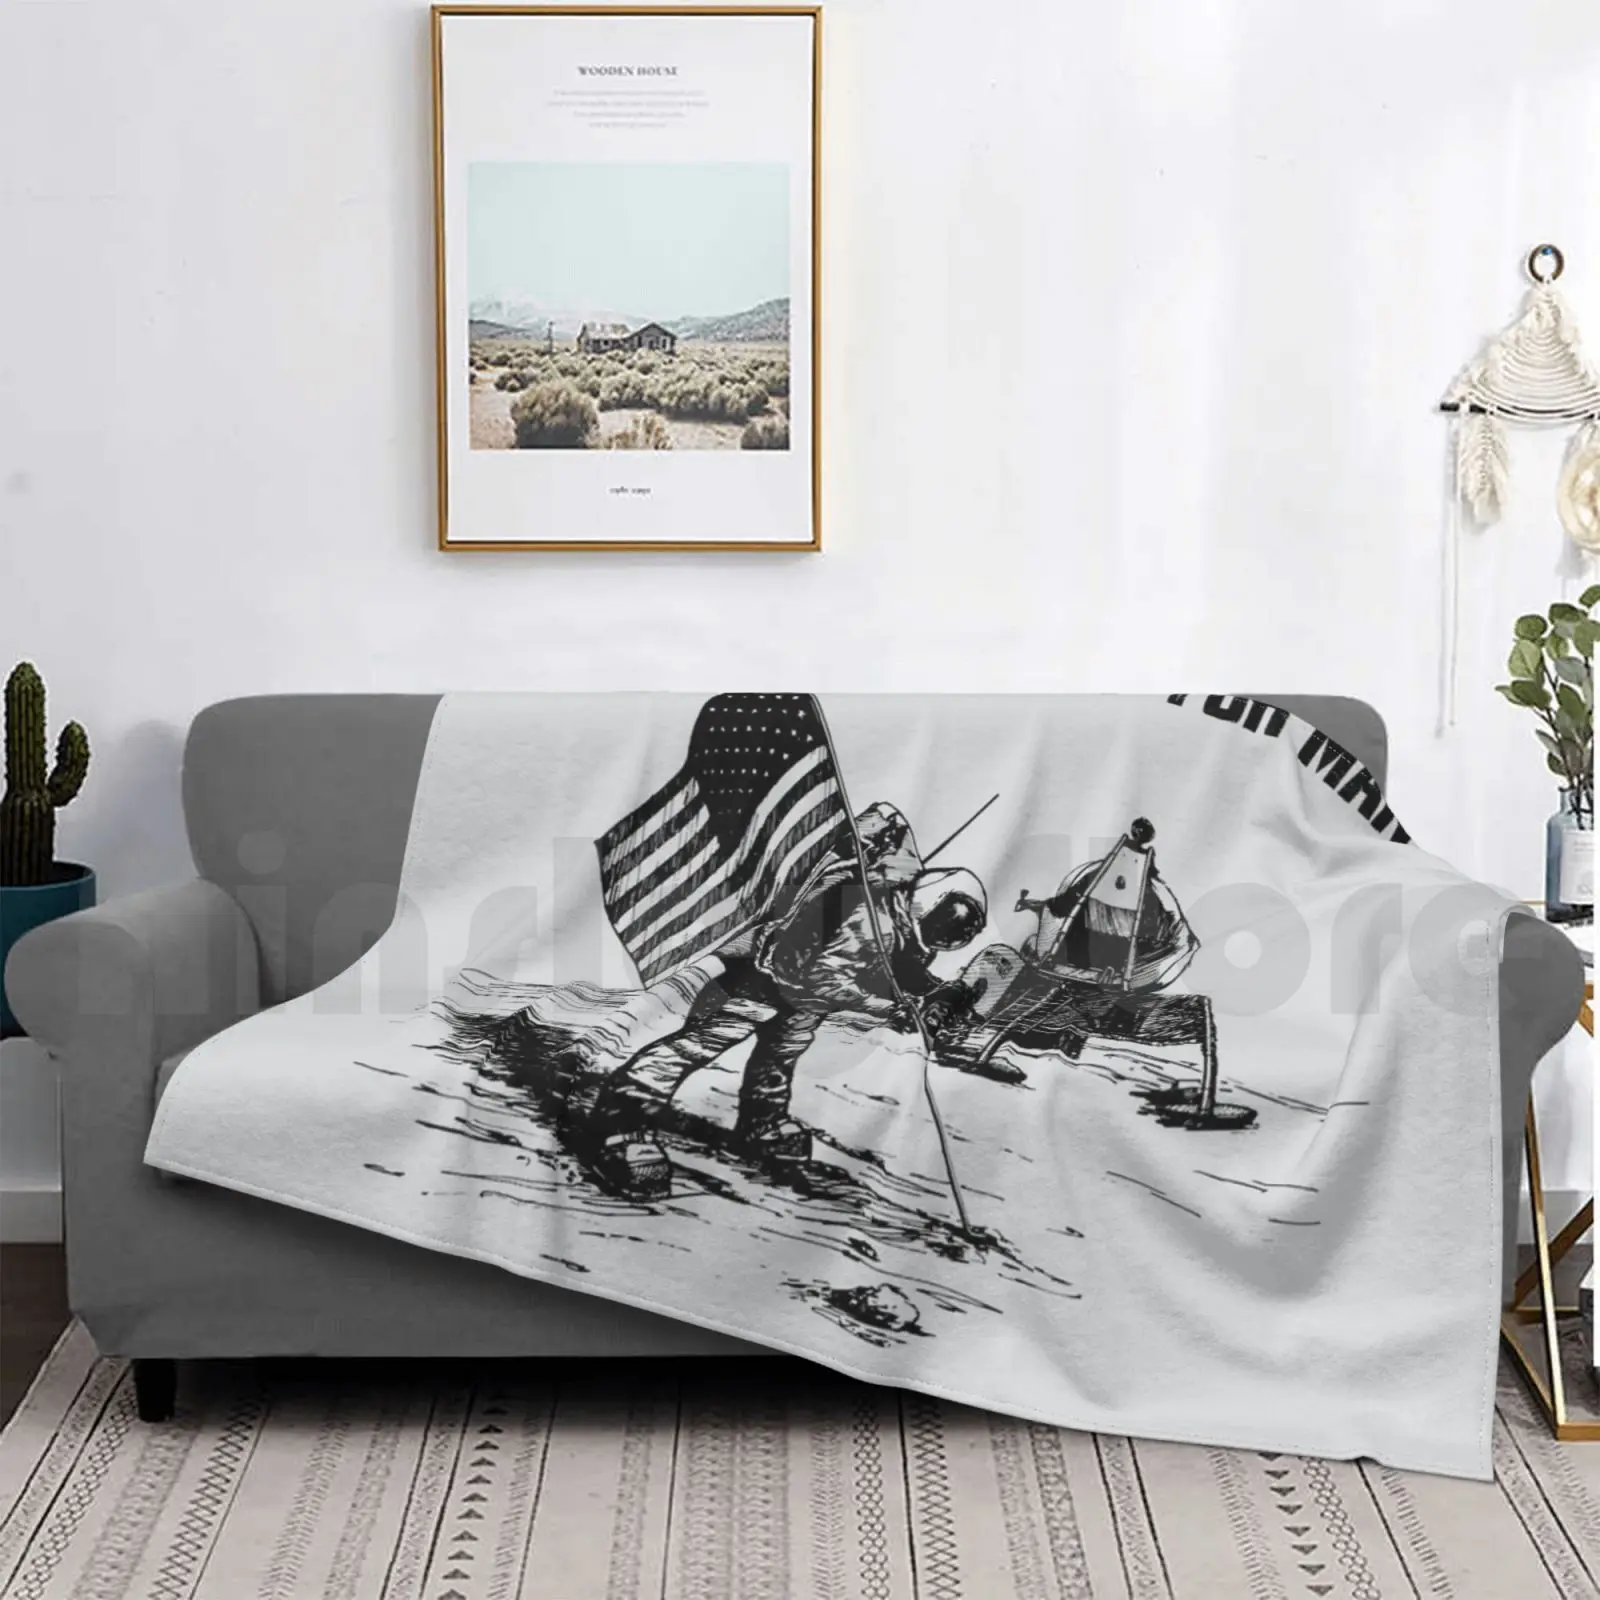 

Модное одеяло с посадкой на луну, Нил Armstrong, астронавт, Космический человек, Нил